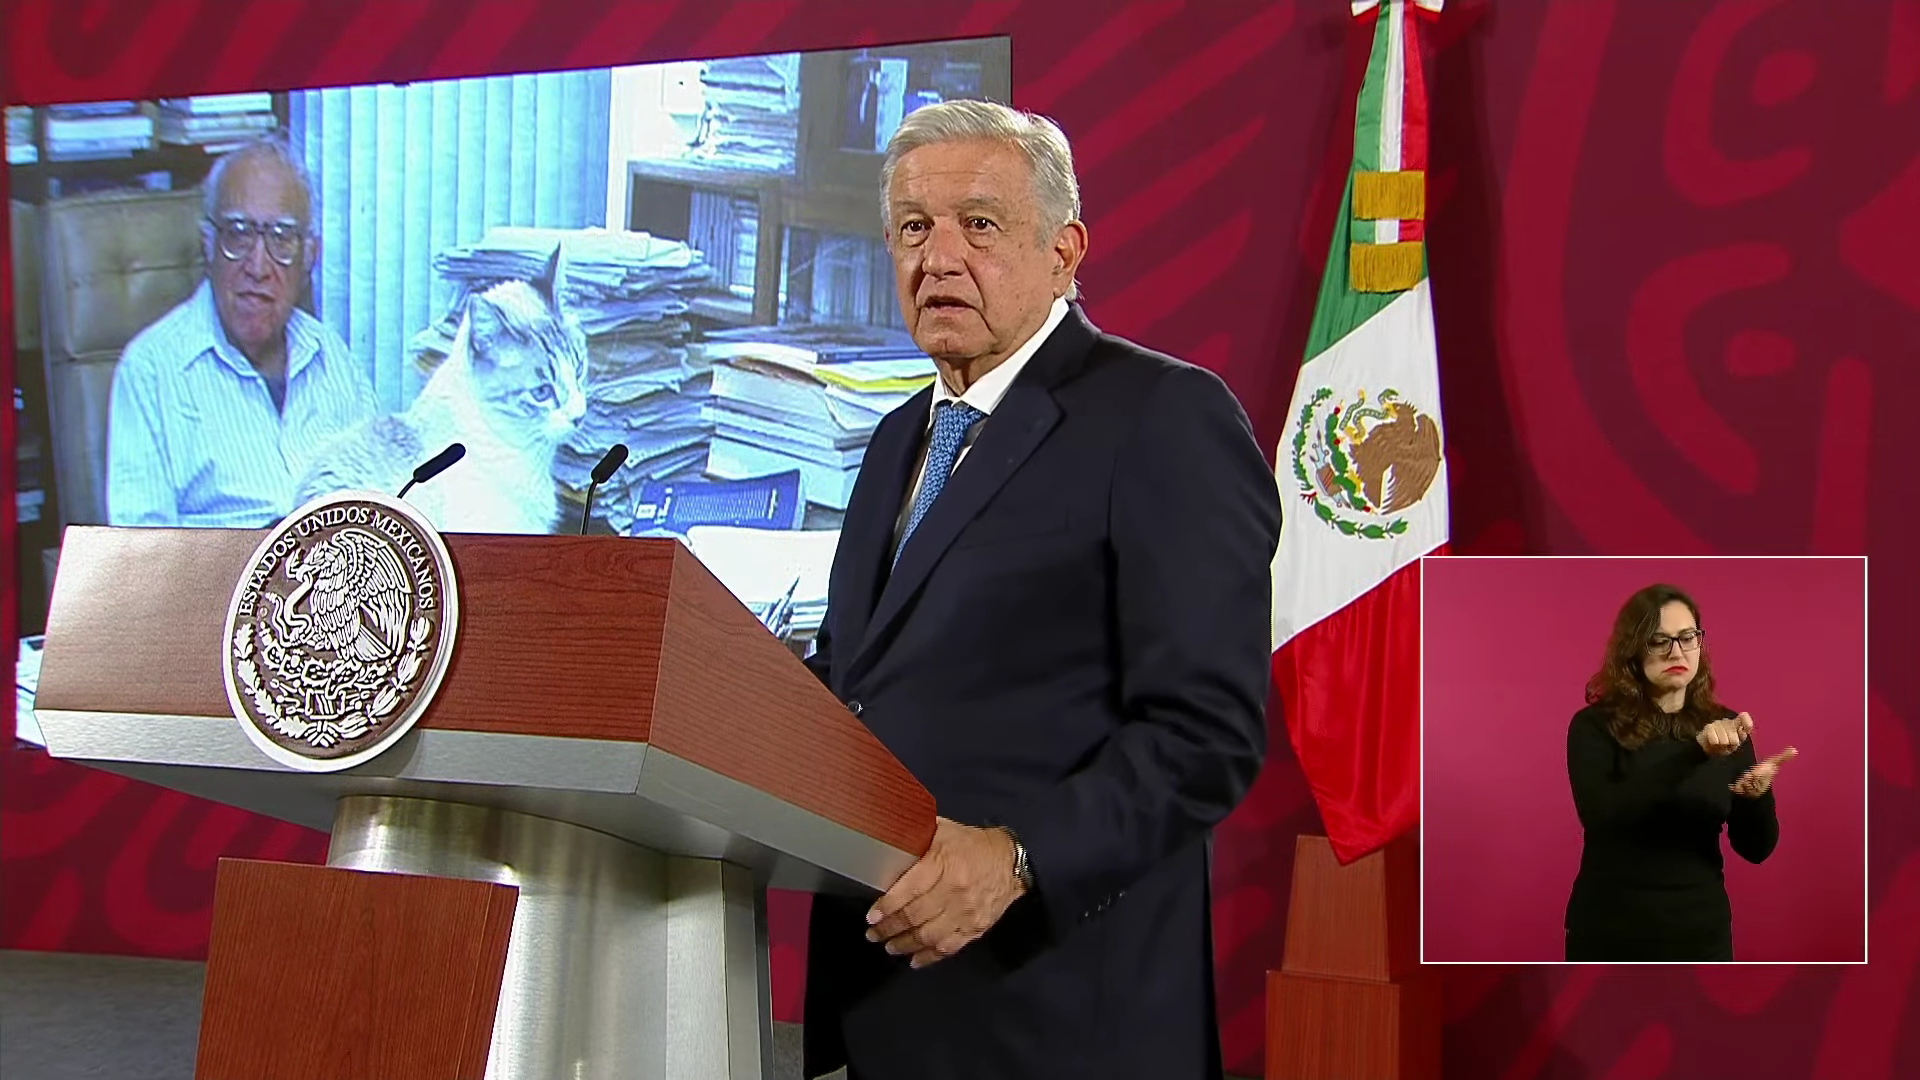 El presidente López Obrador descalificó los actos de violencia del pasado jueves en la FGR. (Foto: Captura de pantalla)